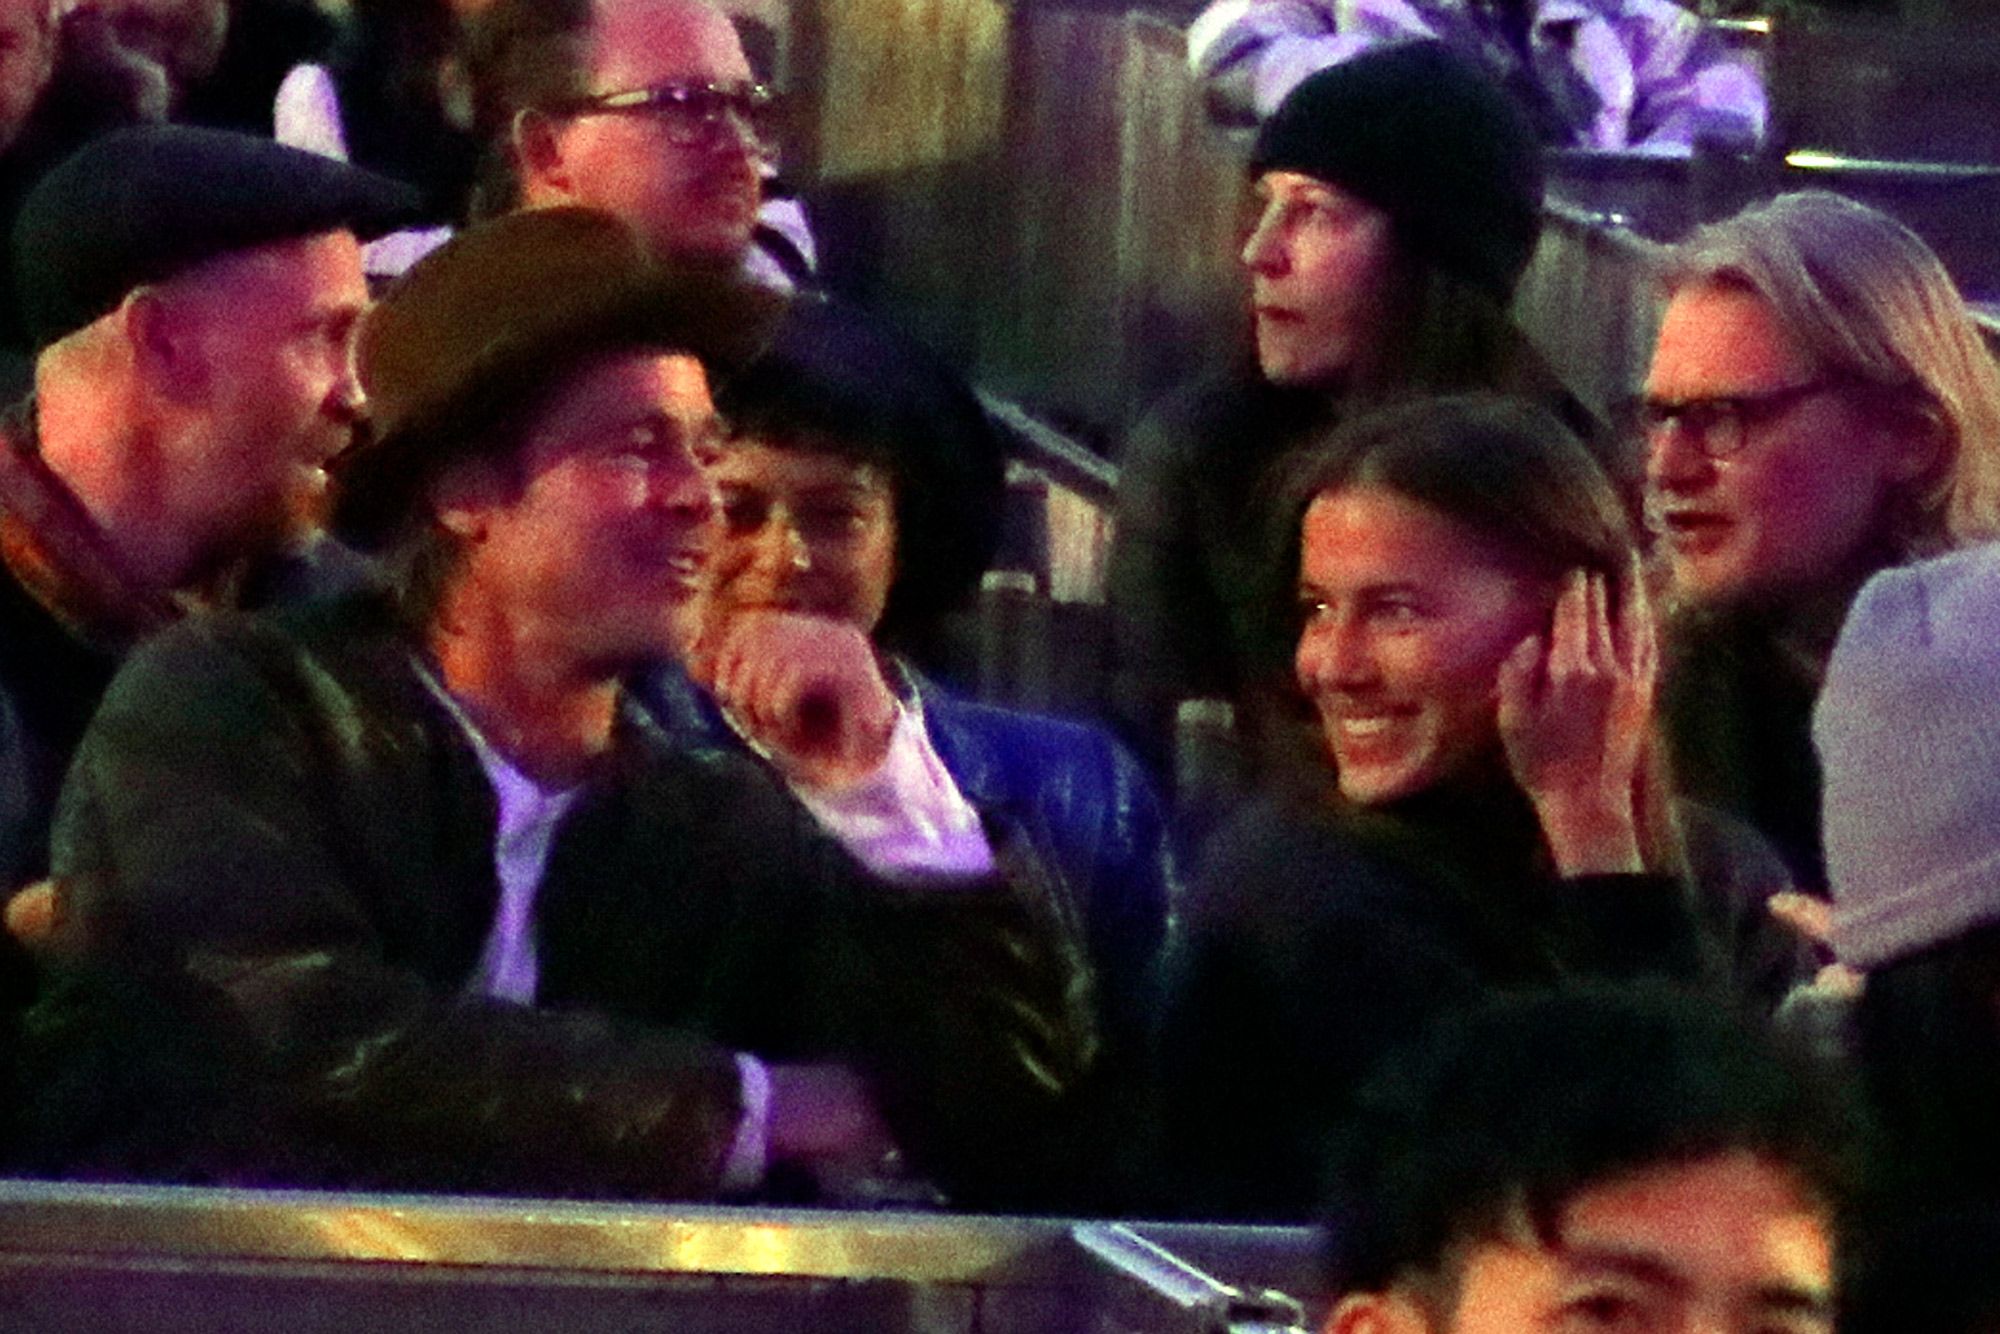 Nicole with her boyfriend Brad Pitt | Source: pagesix.com